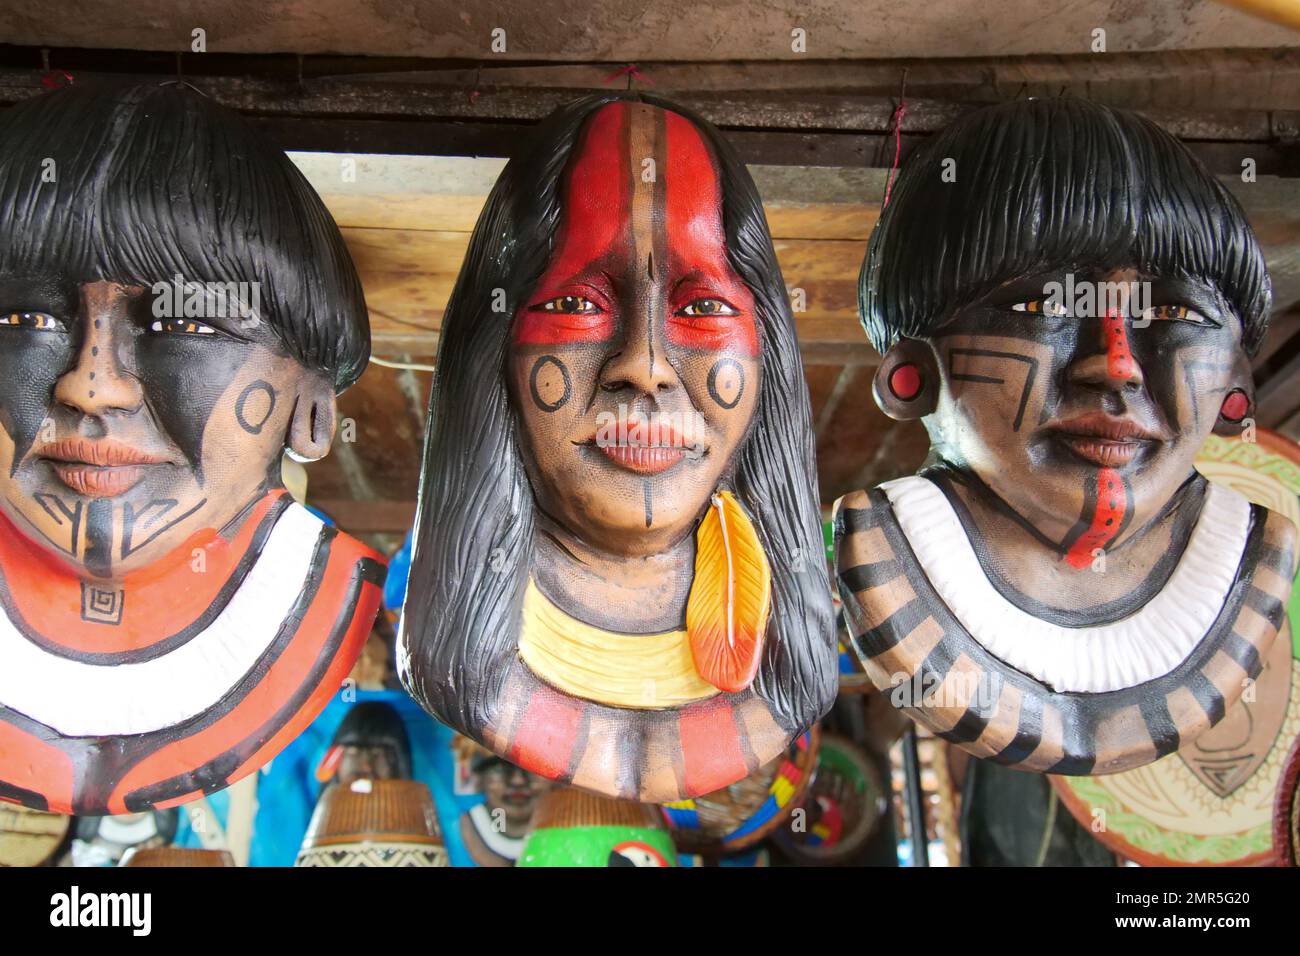 Masques en bois de personnes indigènes amazoniennes dans un curio stall. Lieu : Mercado Ver o Peso, Belem, État de Para, région amazonienne, Brésil, Amérique du Sud Banque D'Images